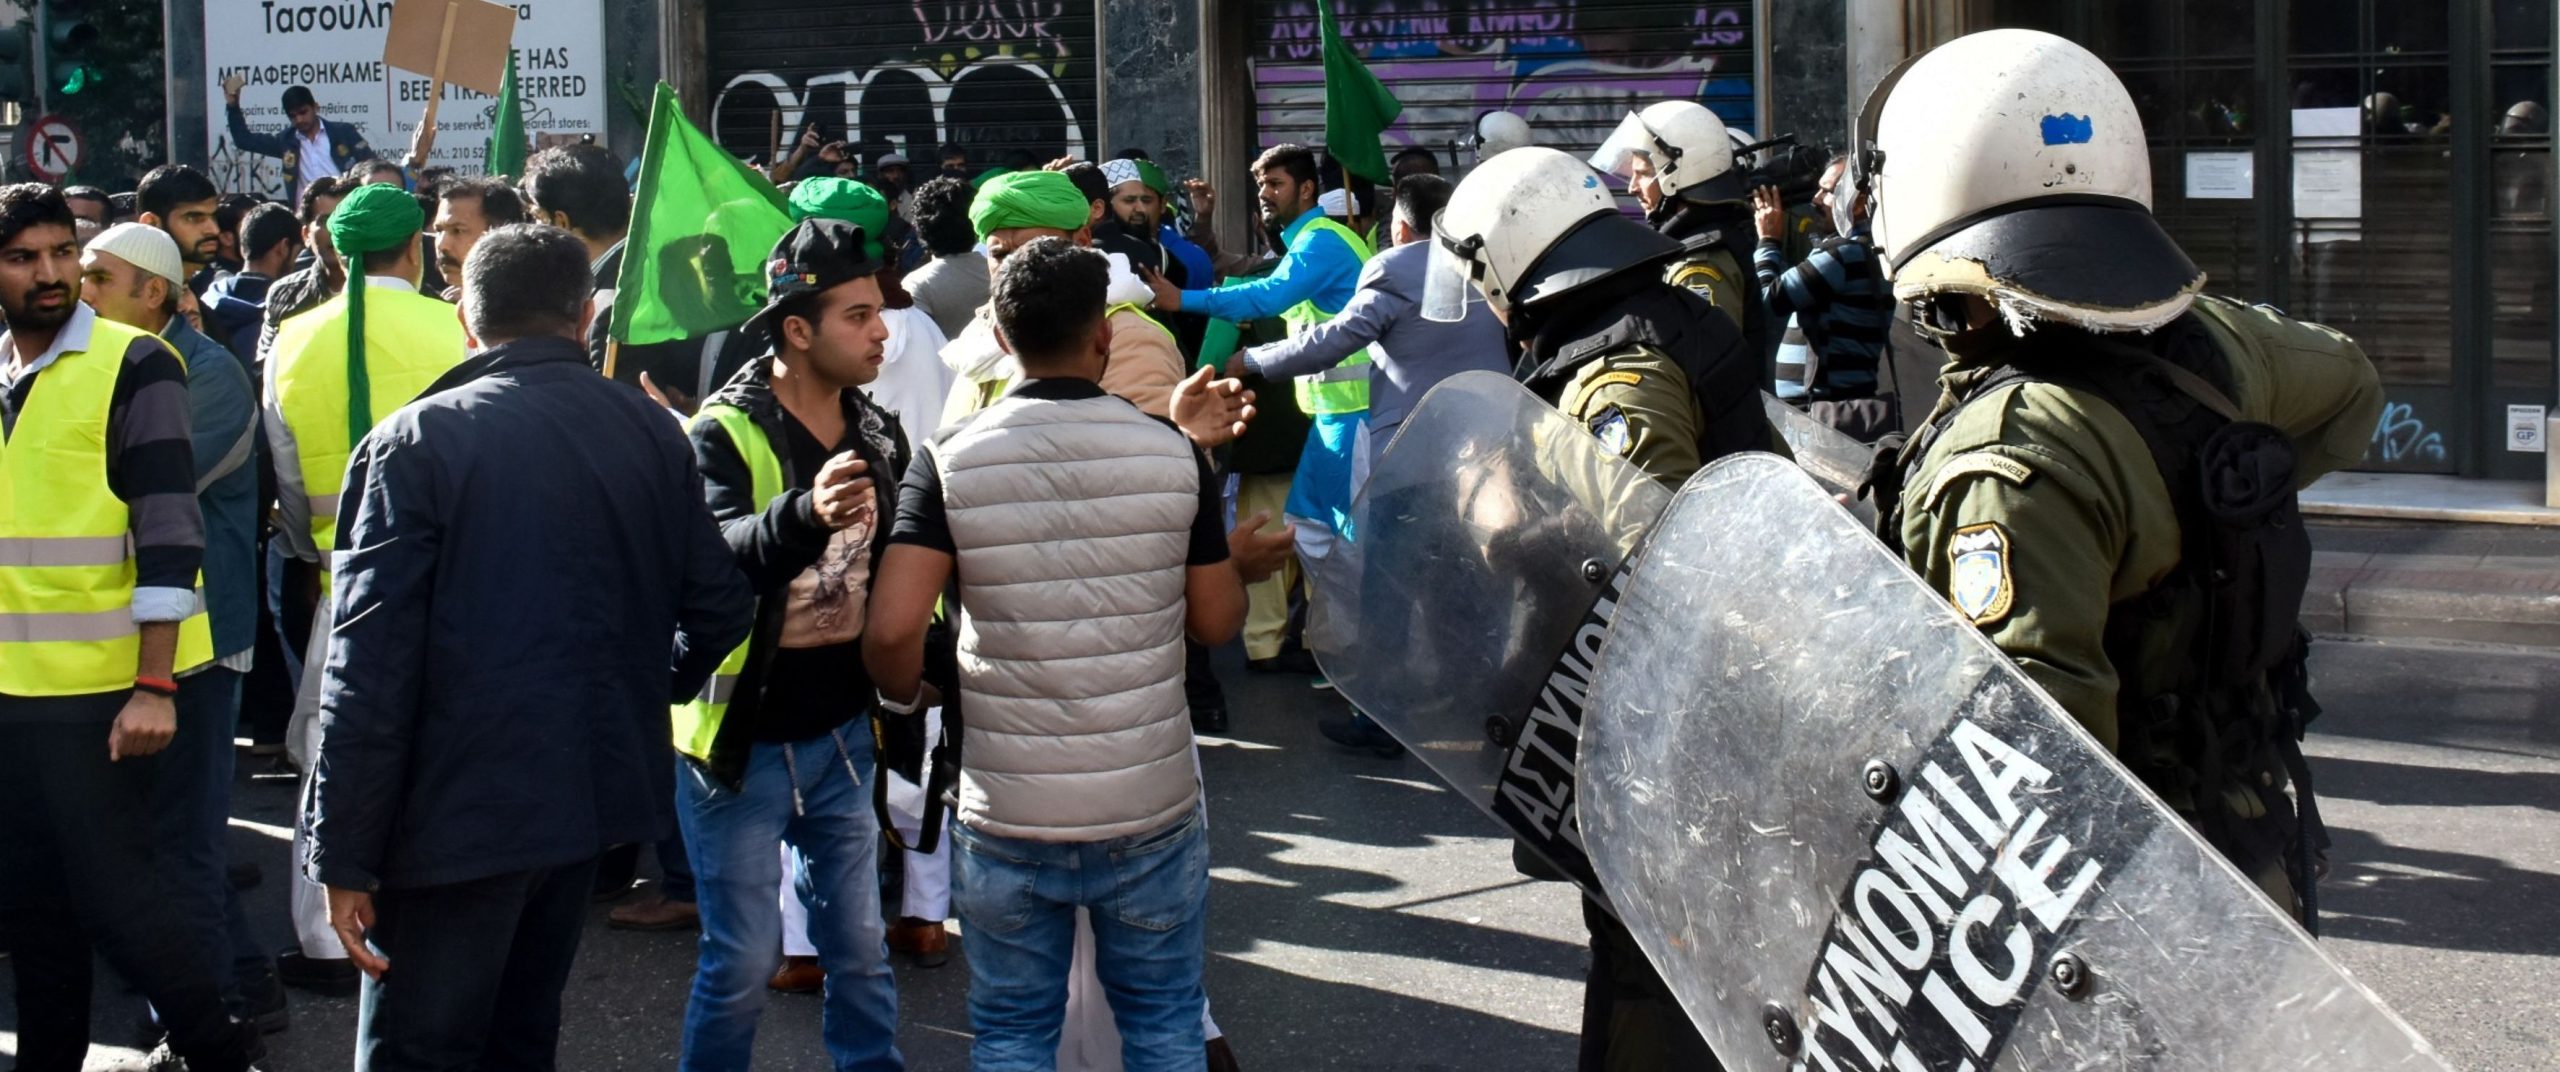 Κύριο θέμα στις ρωσικές ειδήσεις οι εθνοτικές συγκρούσεις στο κέντρο της Αθήνας